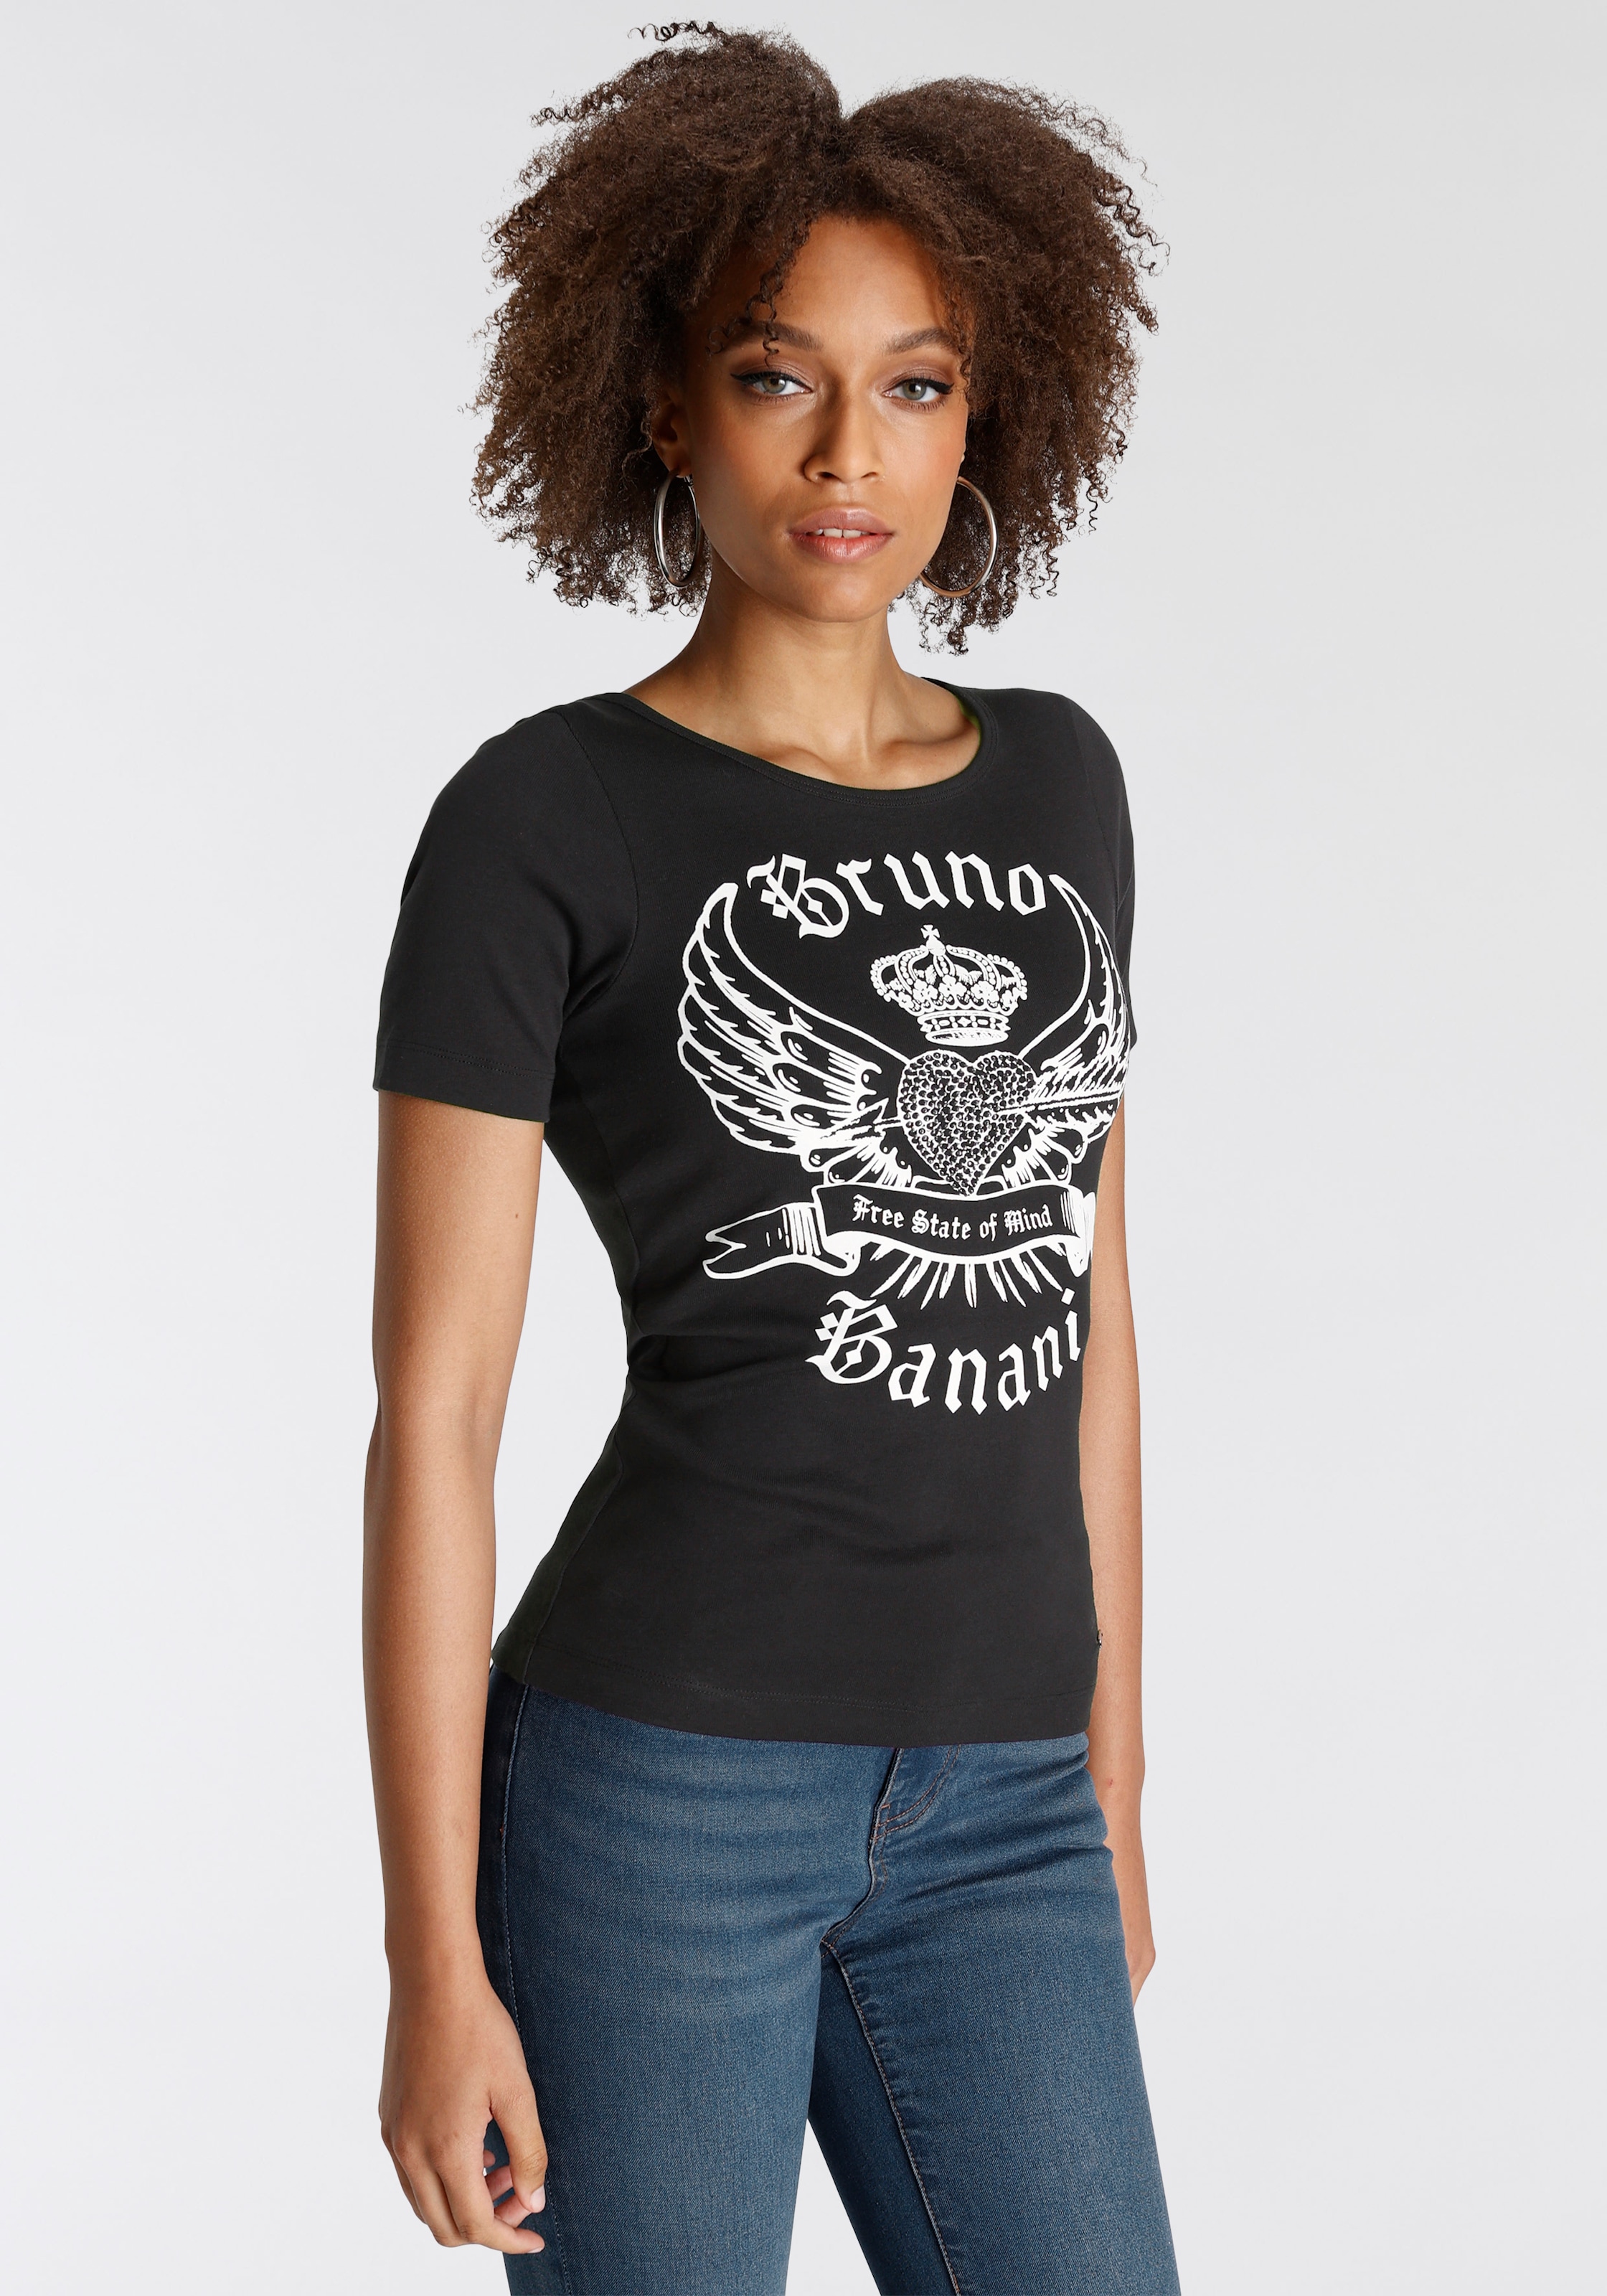 ♕ Bruno KOLLEKTION Banani T-Shirt, versandkostenfrei Logo-Print bestellen NEUE